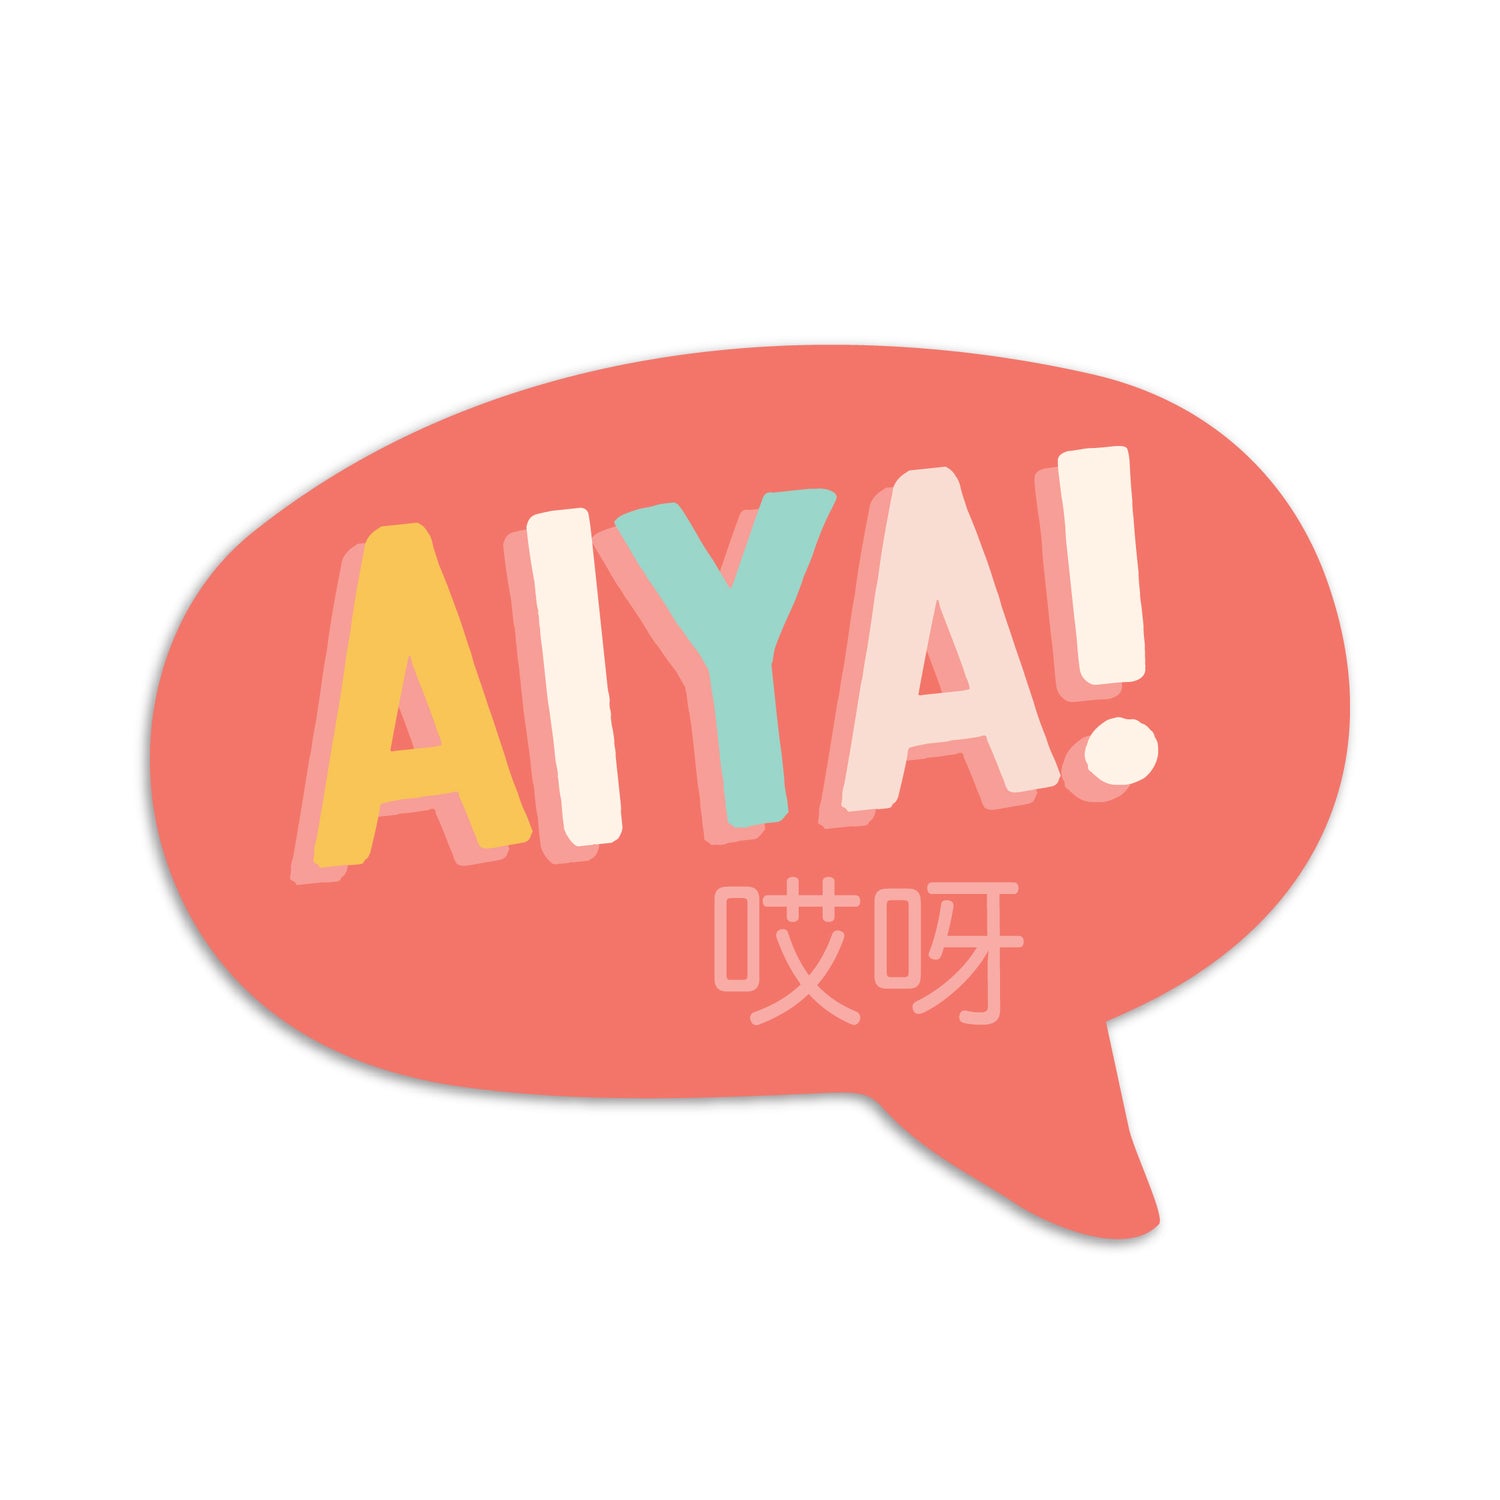 Aiya 哎呀 vinyl sticker by I&